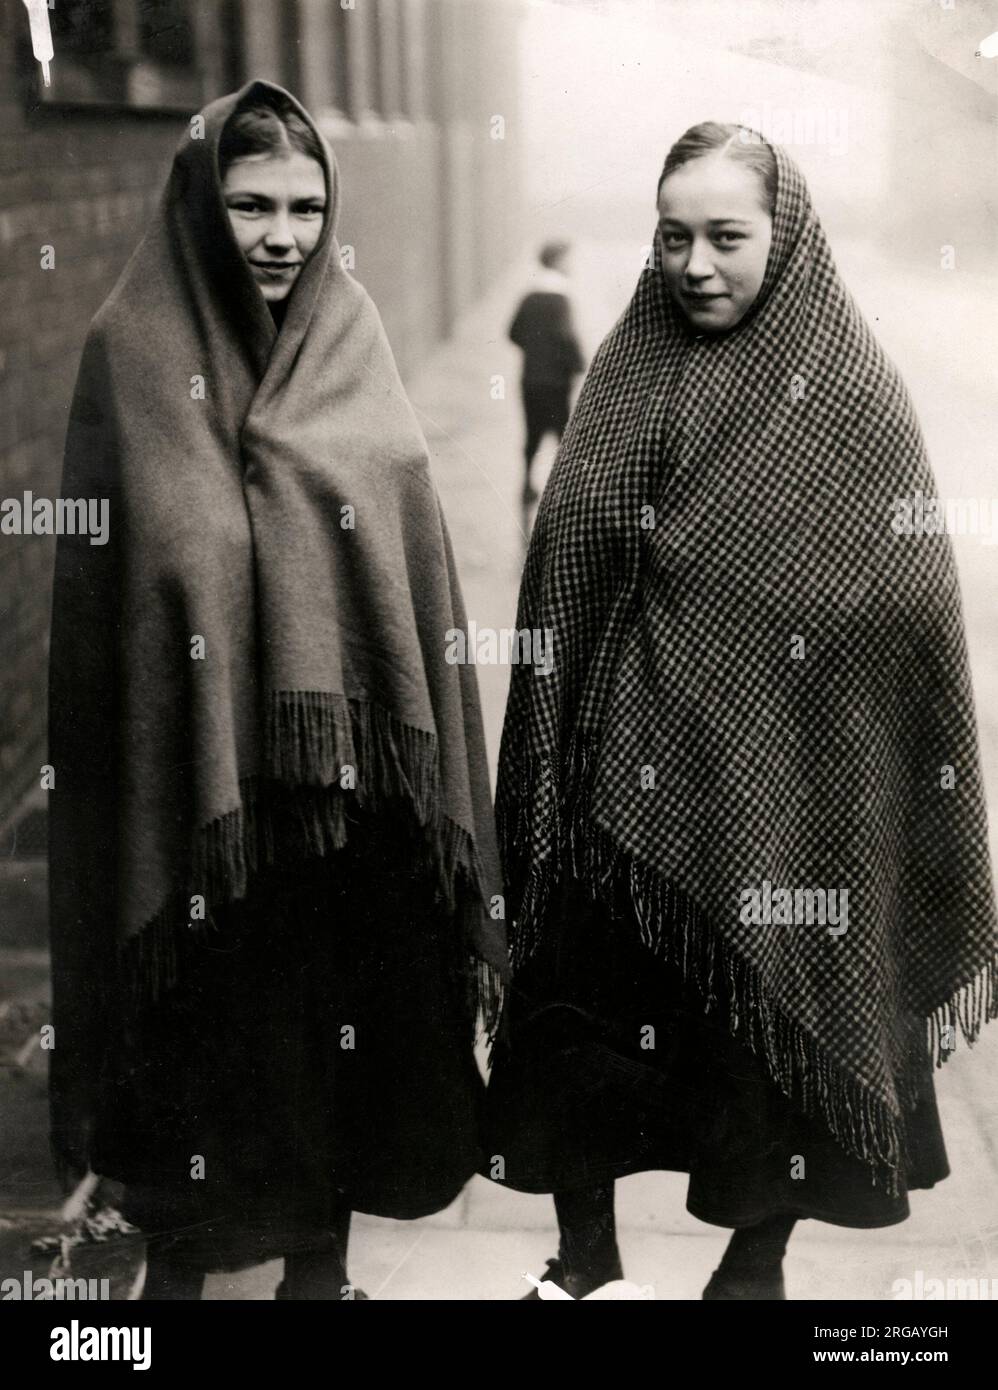 Zwei junge weibliche Mühle Arbeitnehmer oder "illies" während eines Arbeitskampfes Aussperrung in England in den 1920er Jahren. Stockfoto